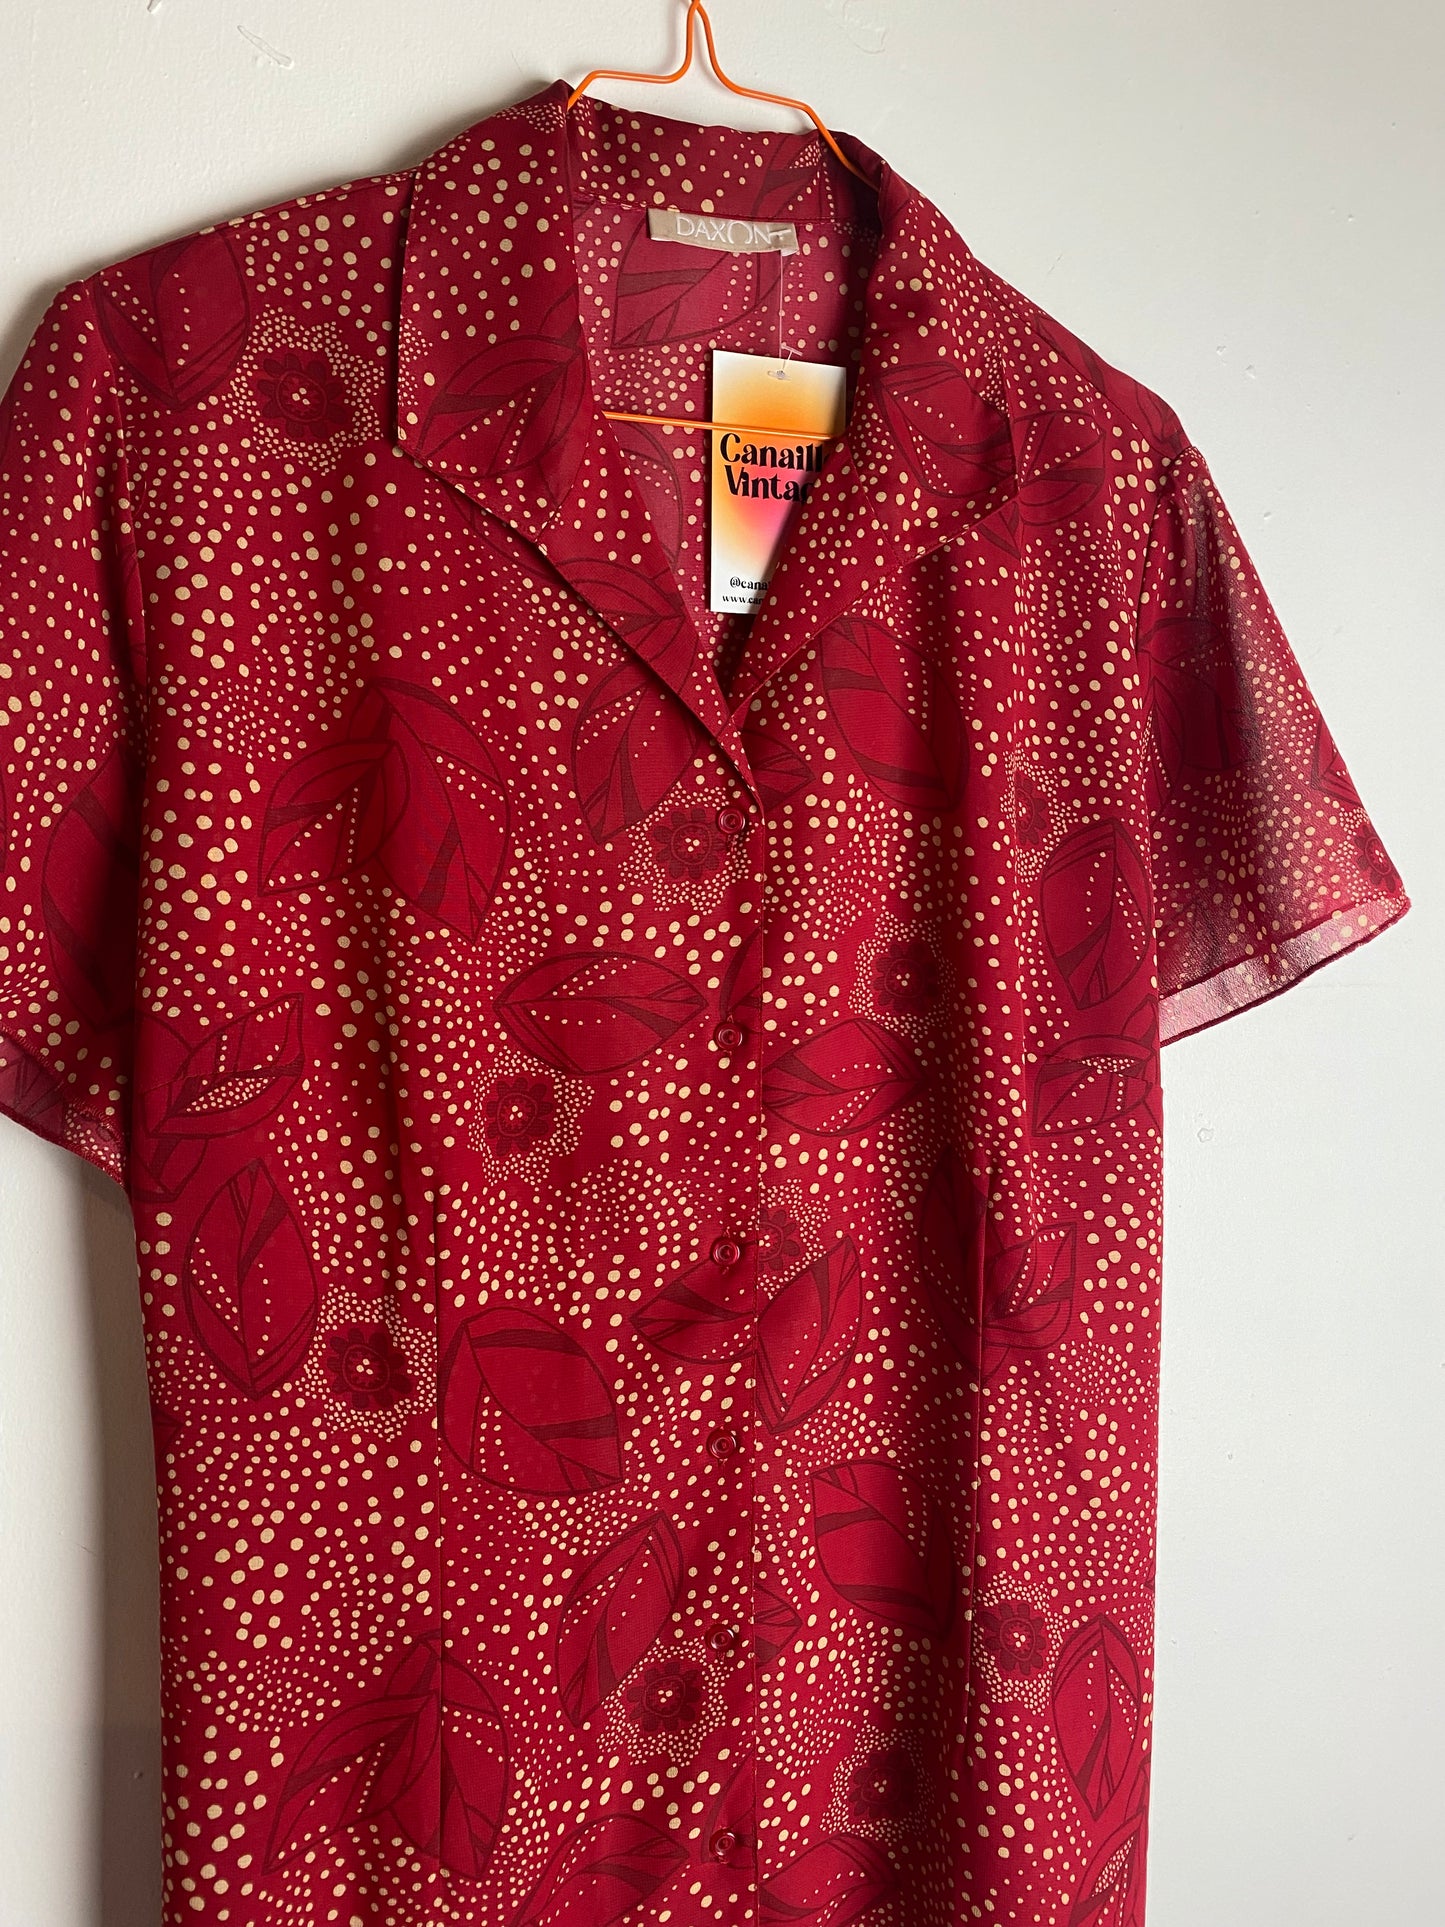 Chemise vintage rouge à motif. Se ferme avec des boutons. Col chemise. Friperie vintage à Bordeaux